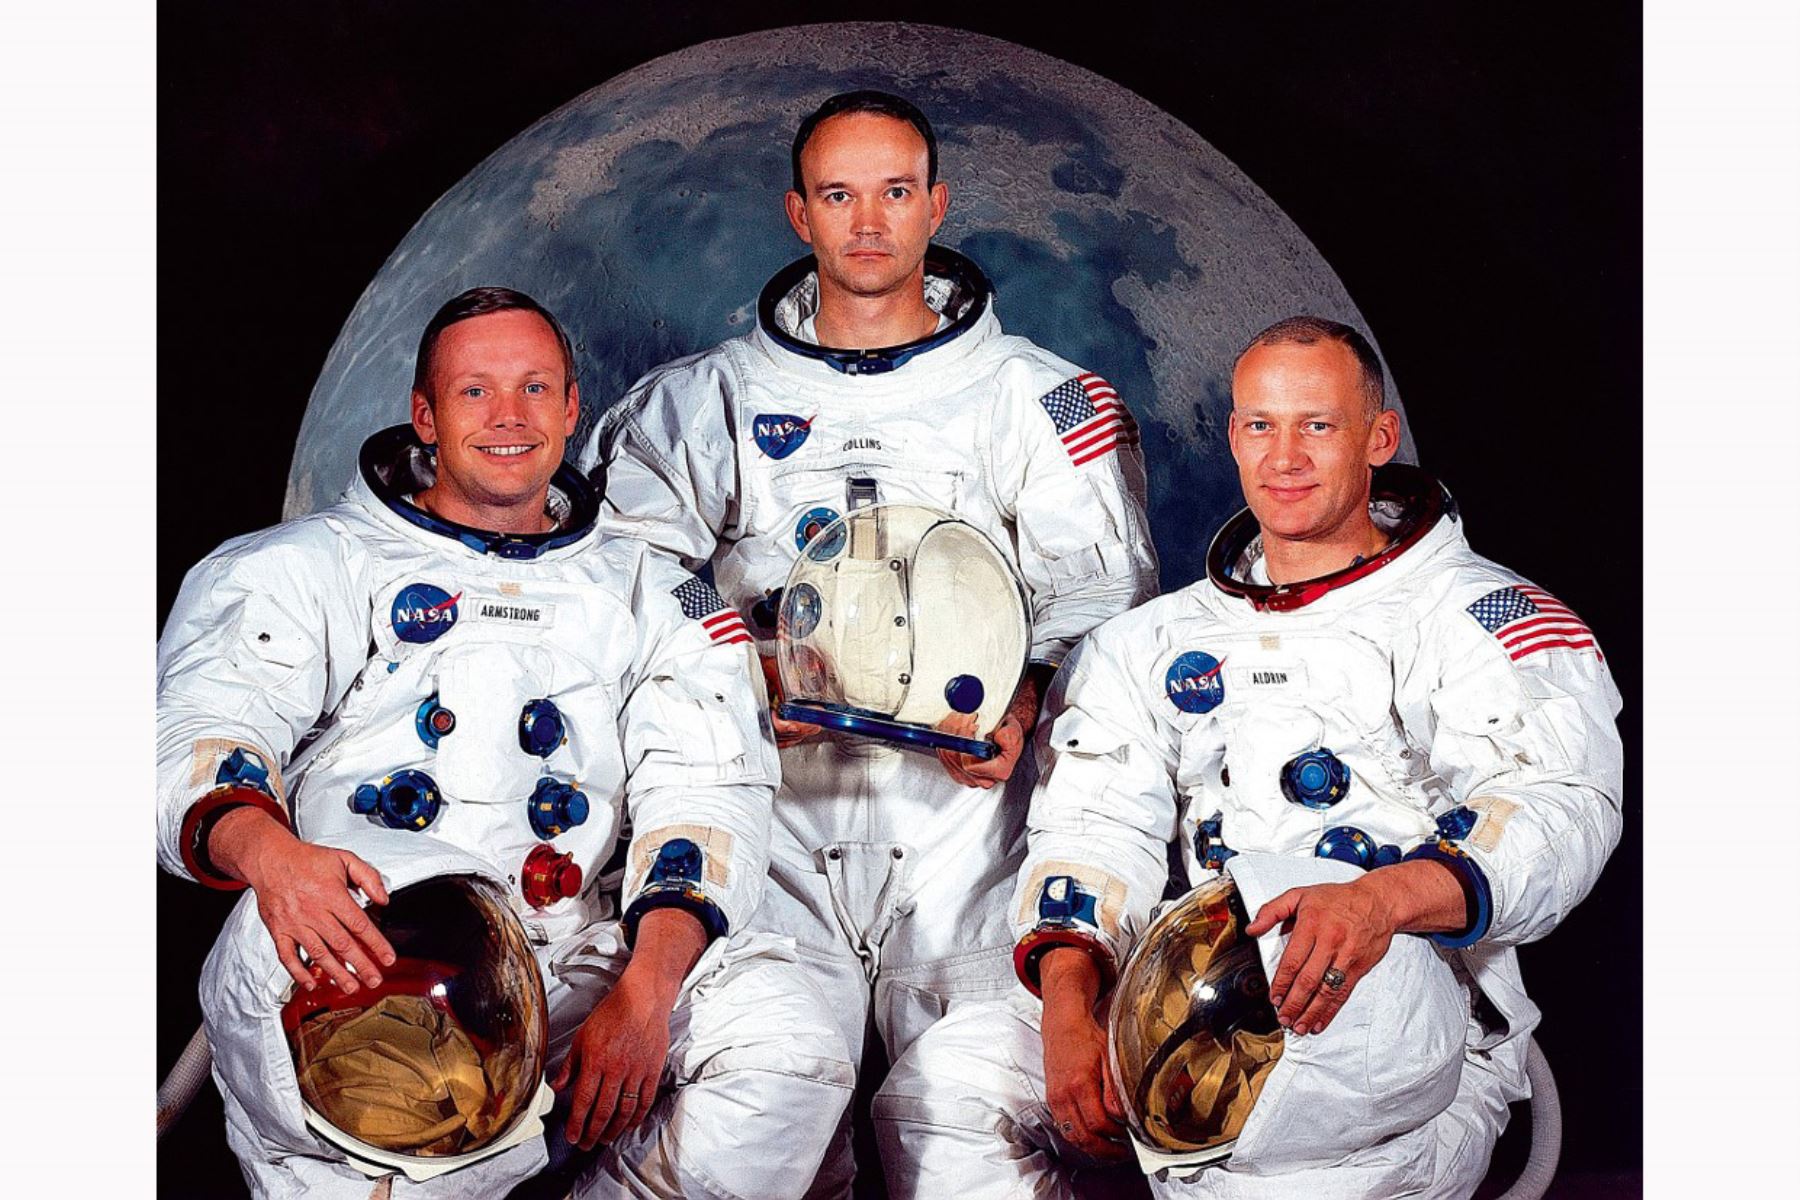 Esta foto de mayo de 1969 muestra a la tripulación de astronautas de la misión de alunizaje Apolo XI. De izquierda a derecha, Neil A. Armstrong, comandante; Michael Collins, piloto del módulo de comando; y Edwin E. Aldrin Jr., módulo lunar. Foto por NASA/AFP